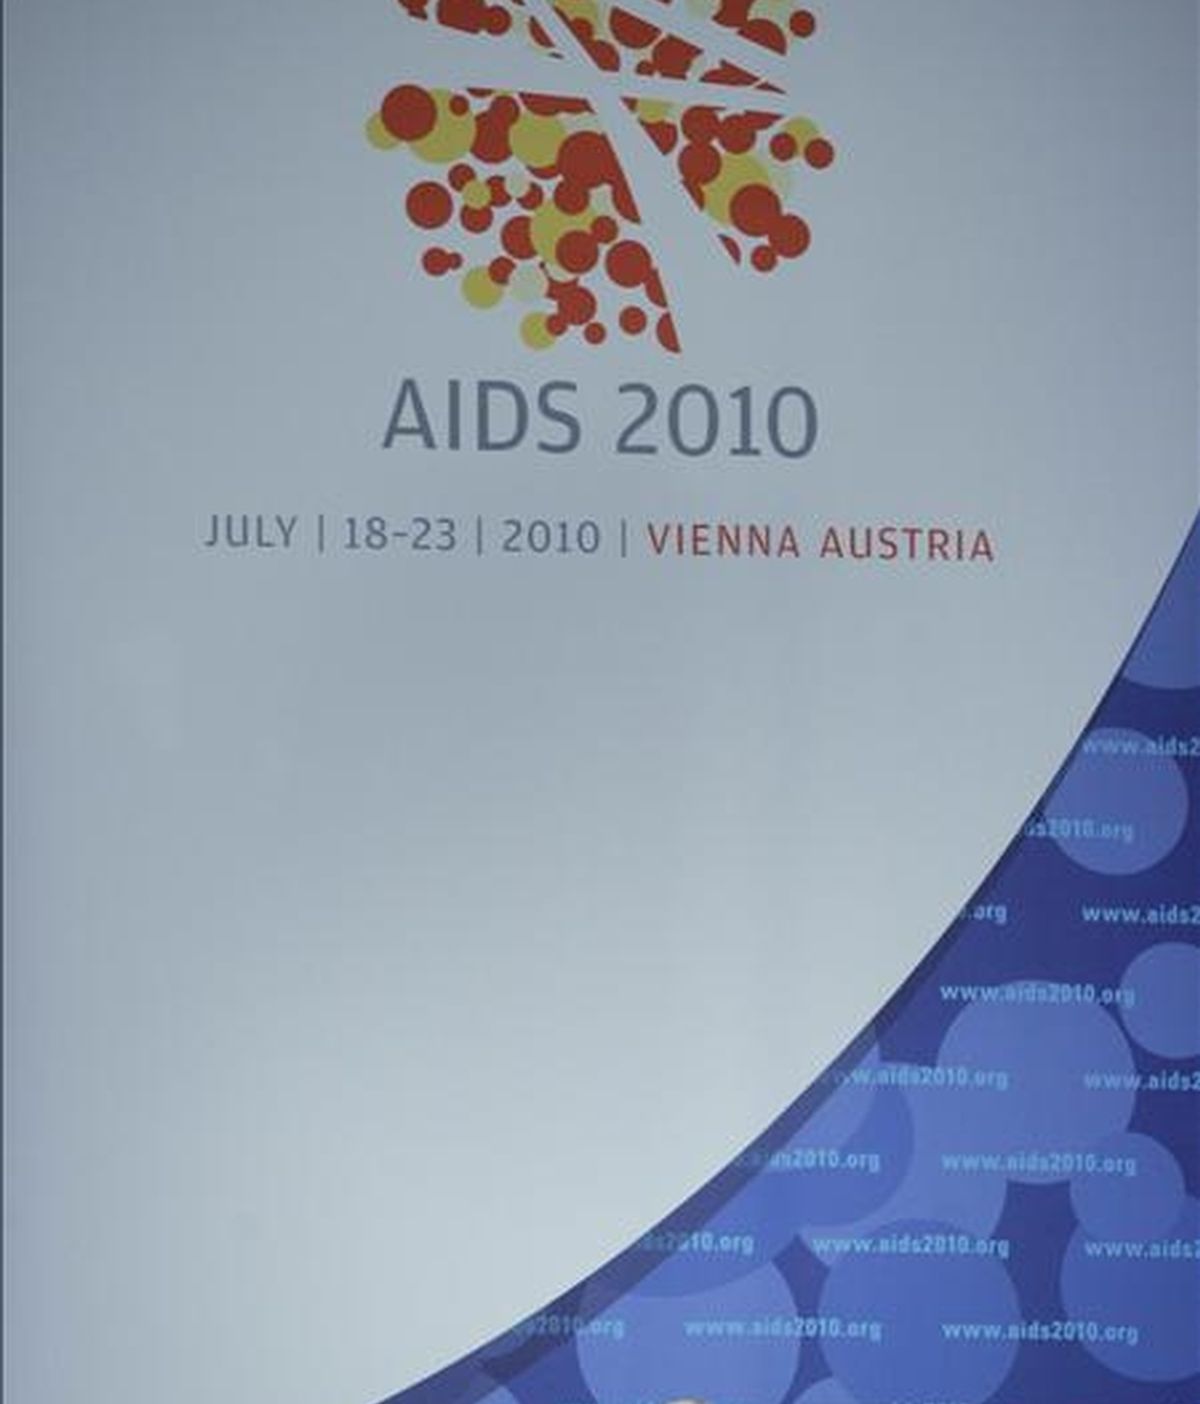 El presidente de la Sociedad Internacional del SIDA, de la conferencia SIDA 2010, Julio Montaner, toma la palabra durante la inauguración de la 18ª Conferencia del SIDA en Viena. EFE